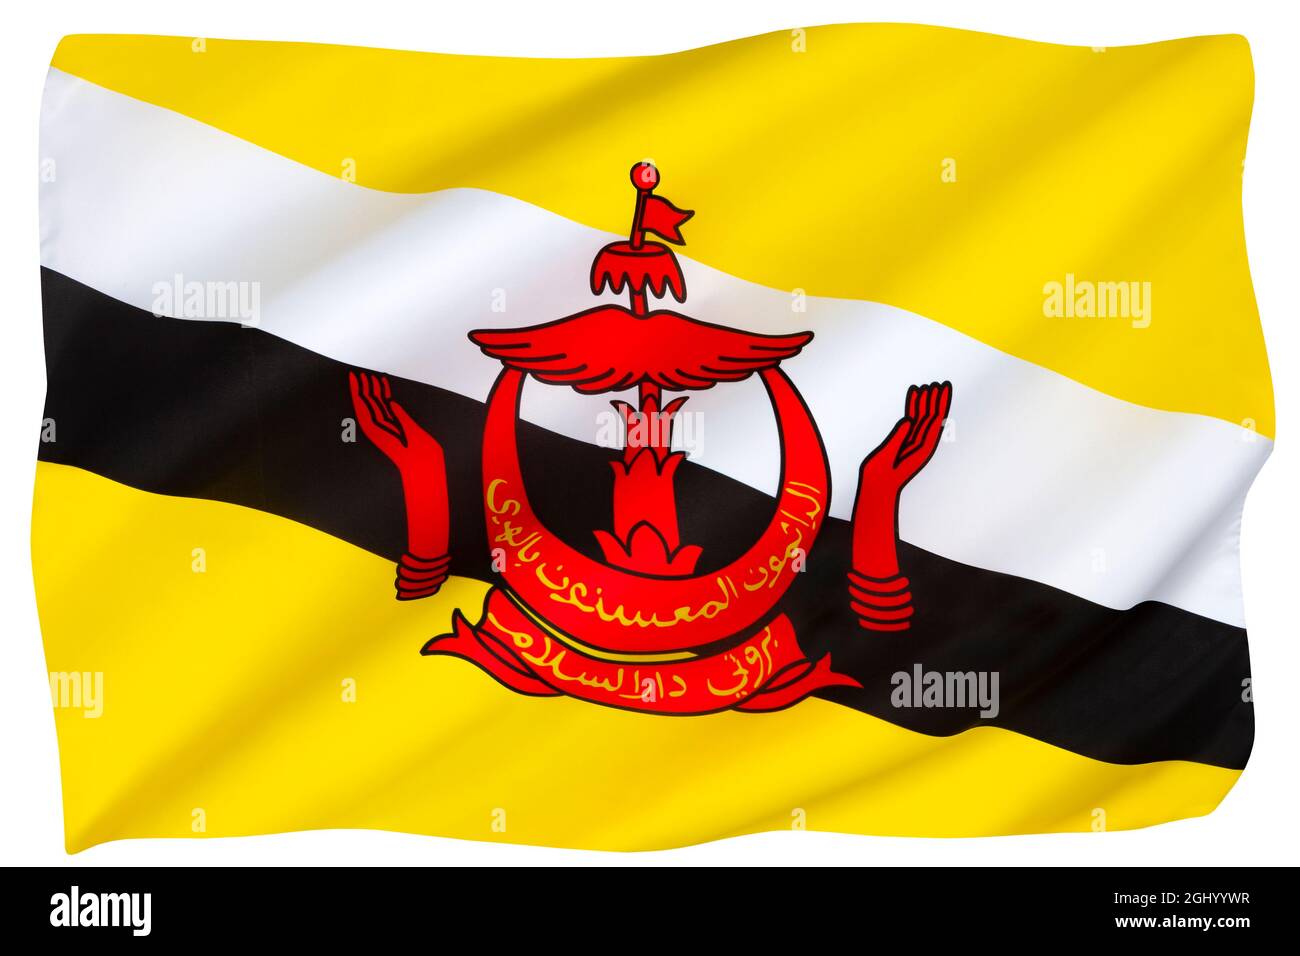 Flagge von Brunei - in Südostasien ist Gelb traditionell die Farbe des Königshauses. Der Halbmond symbolisiert den Islam, der Sonnenschirm symbolisiert die Monarchie und Stockfoto